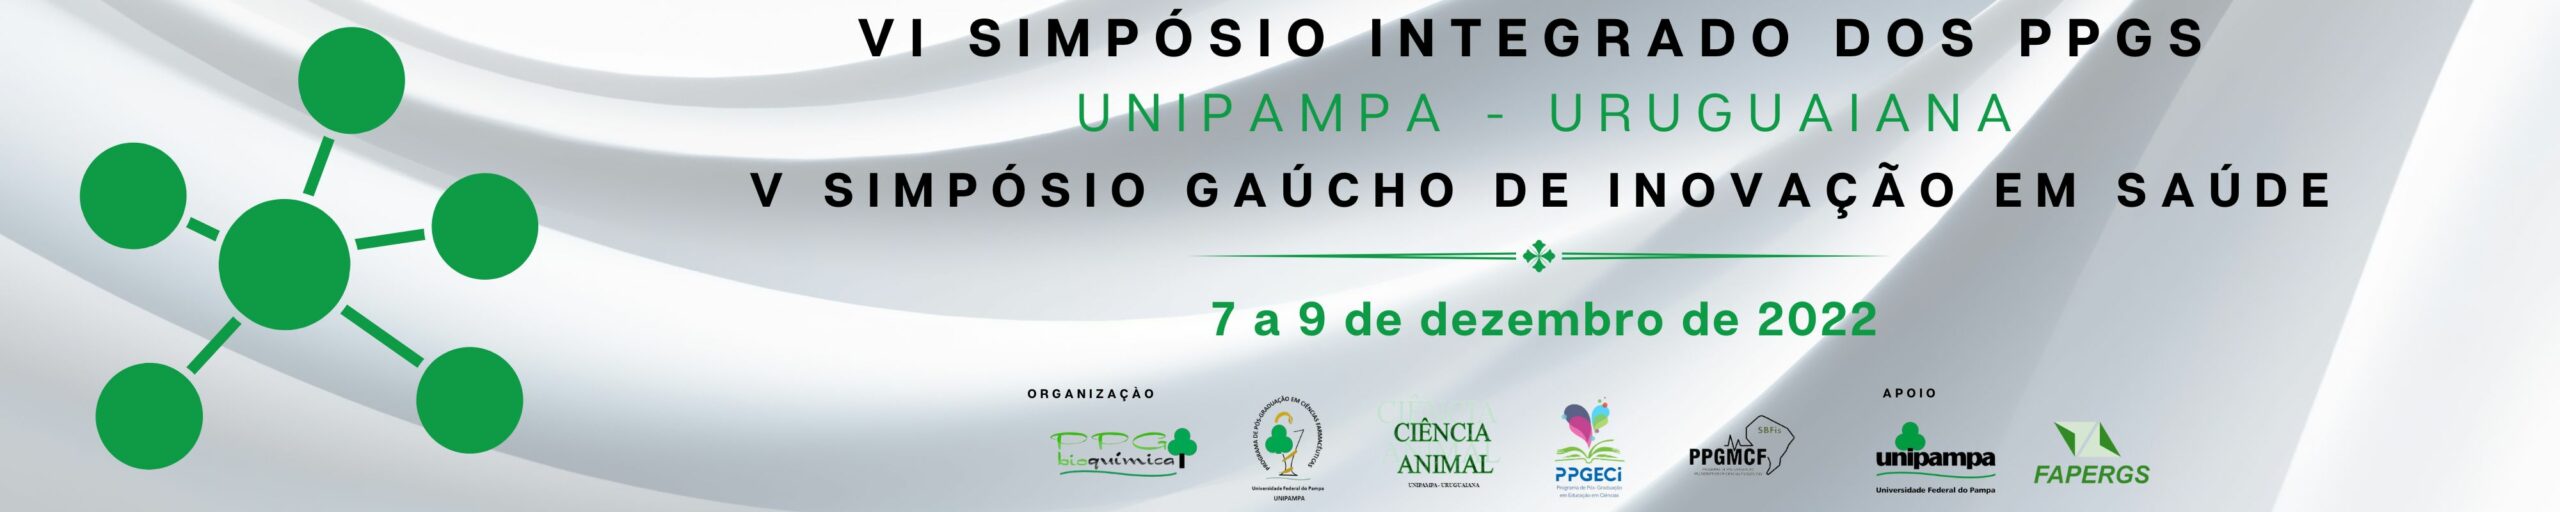 Simpósio Integrado dos PPGs de Uruguaiana